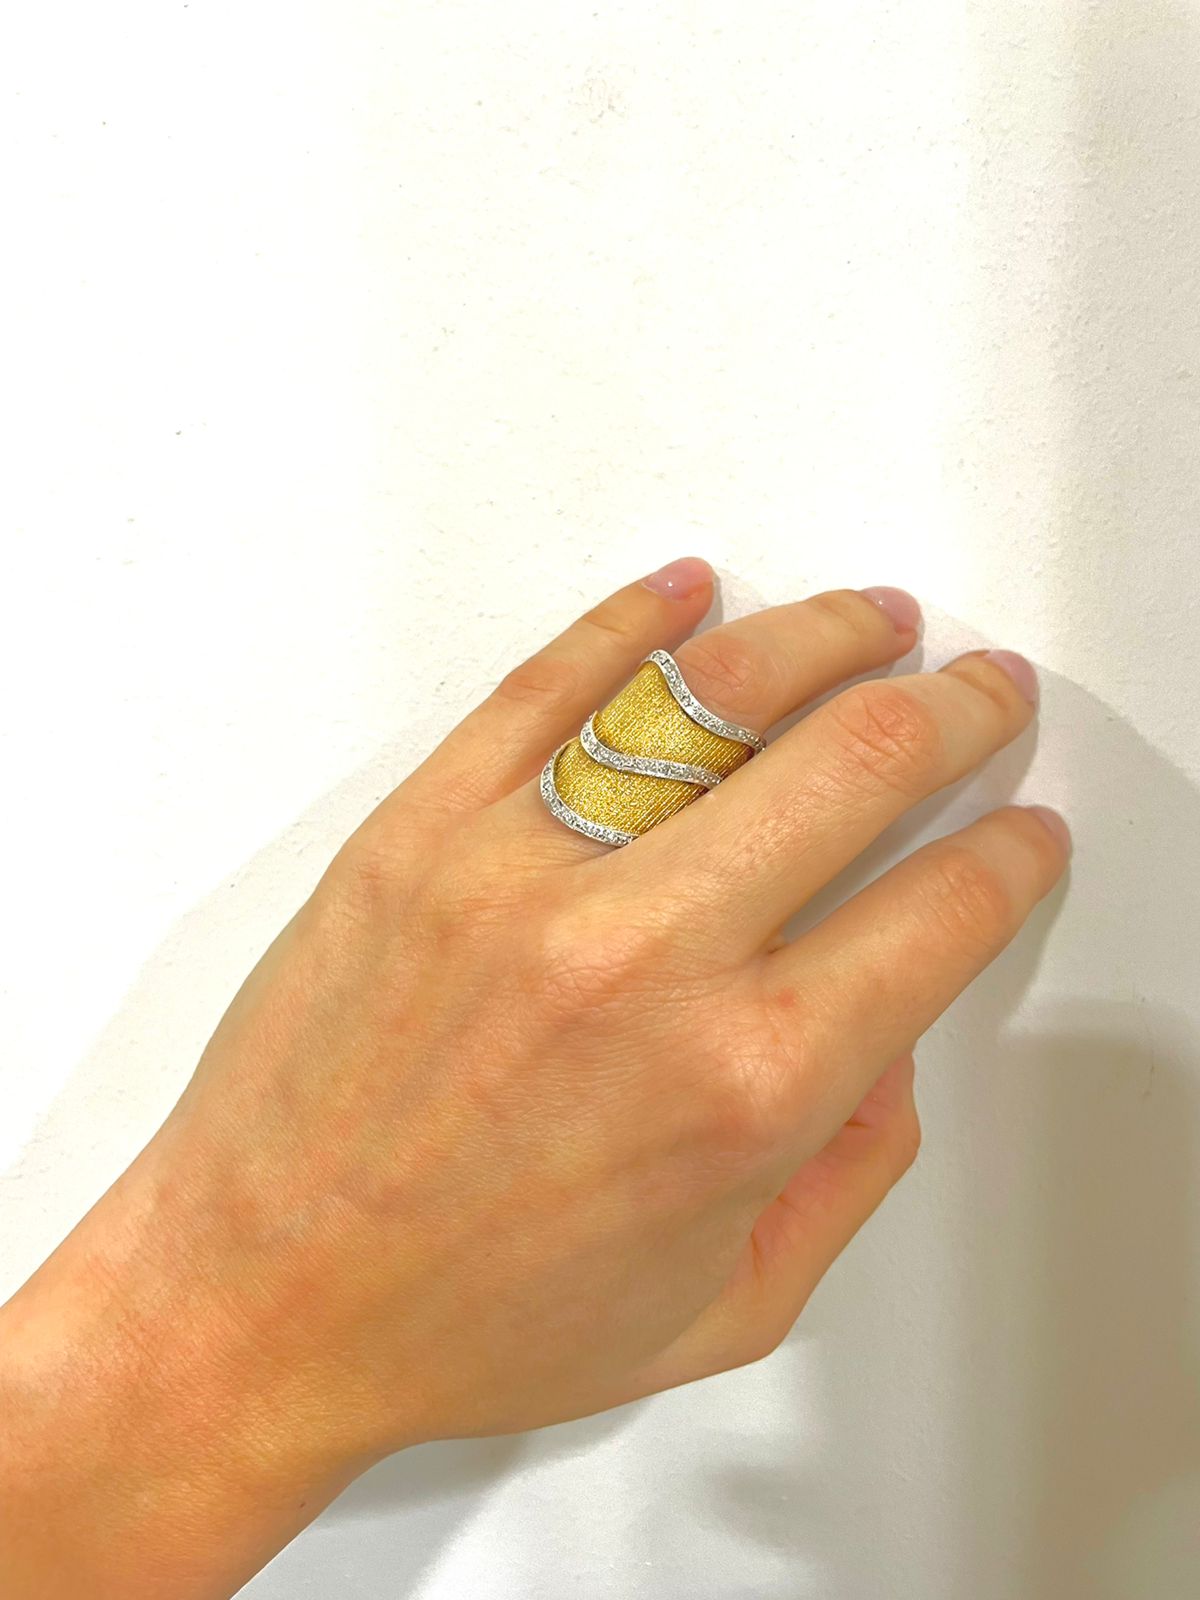 Εντυπωσιακό δαχτυλίδι σε συνδυασμό λευκού και κίτρινου χρυσού Κ18, με ριγέ ματ φινίρισμα και γυαλιστερές λεπτομέρειες